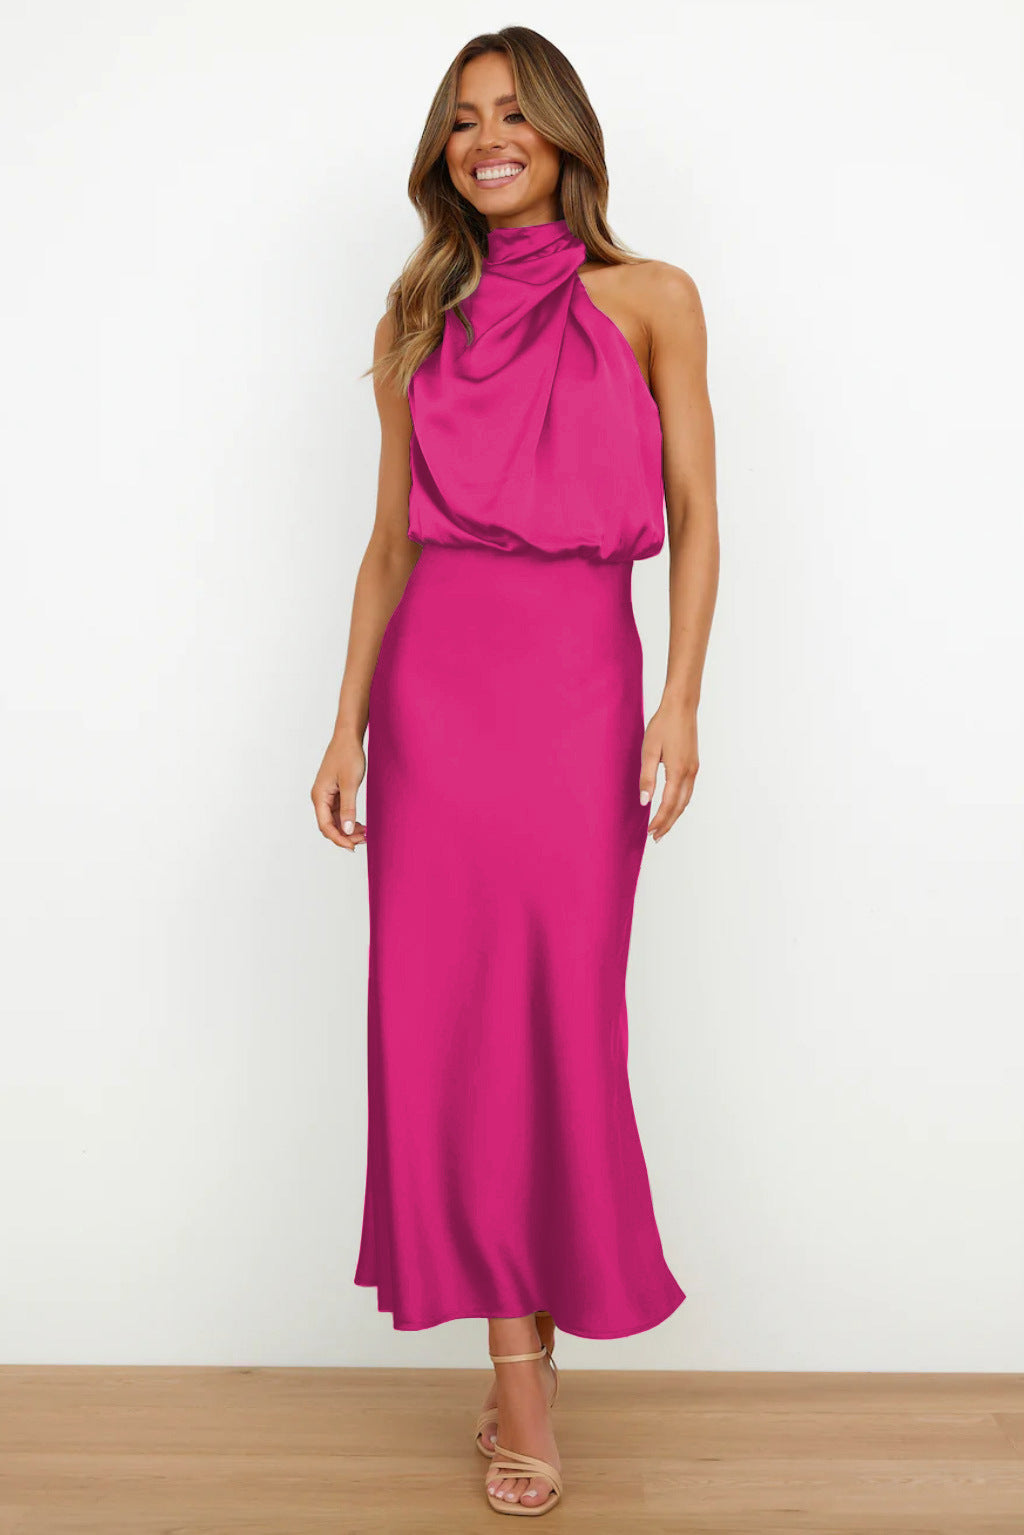 Sisakphoto™-Stylish and elegant satin sleeveless dress